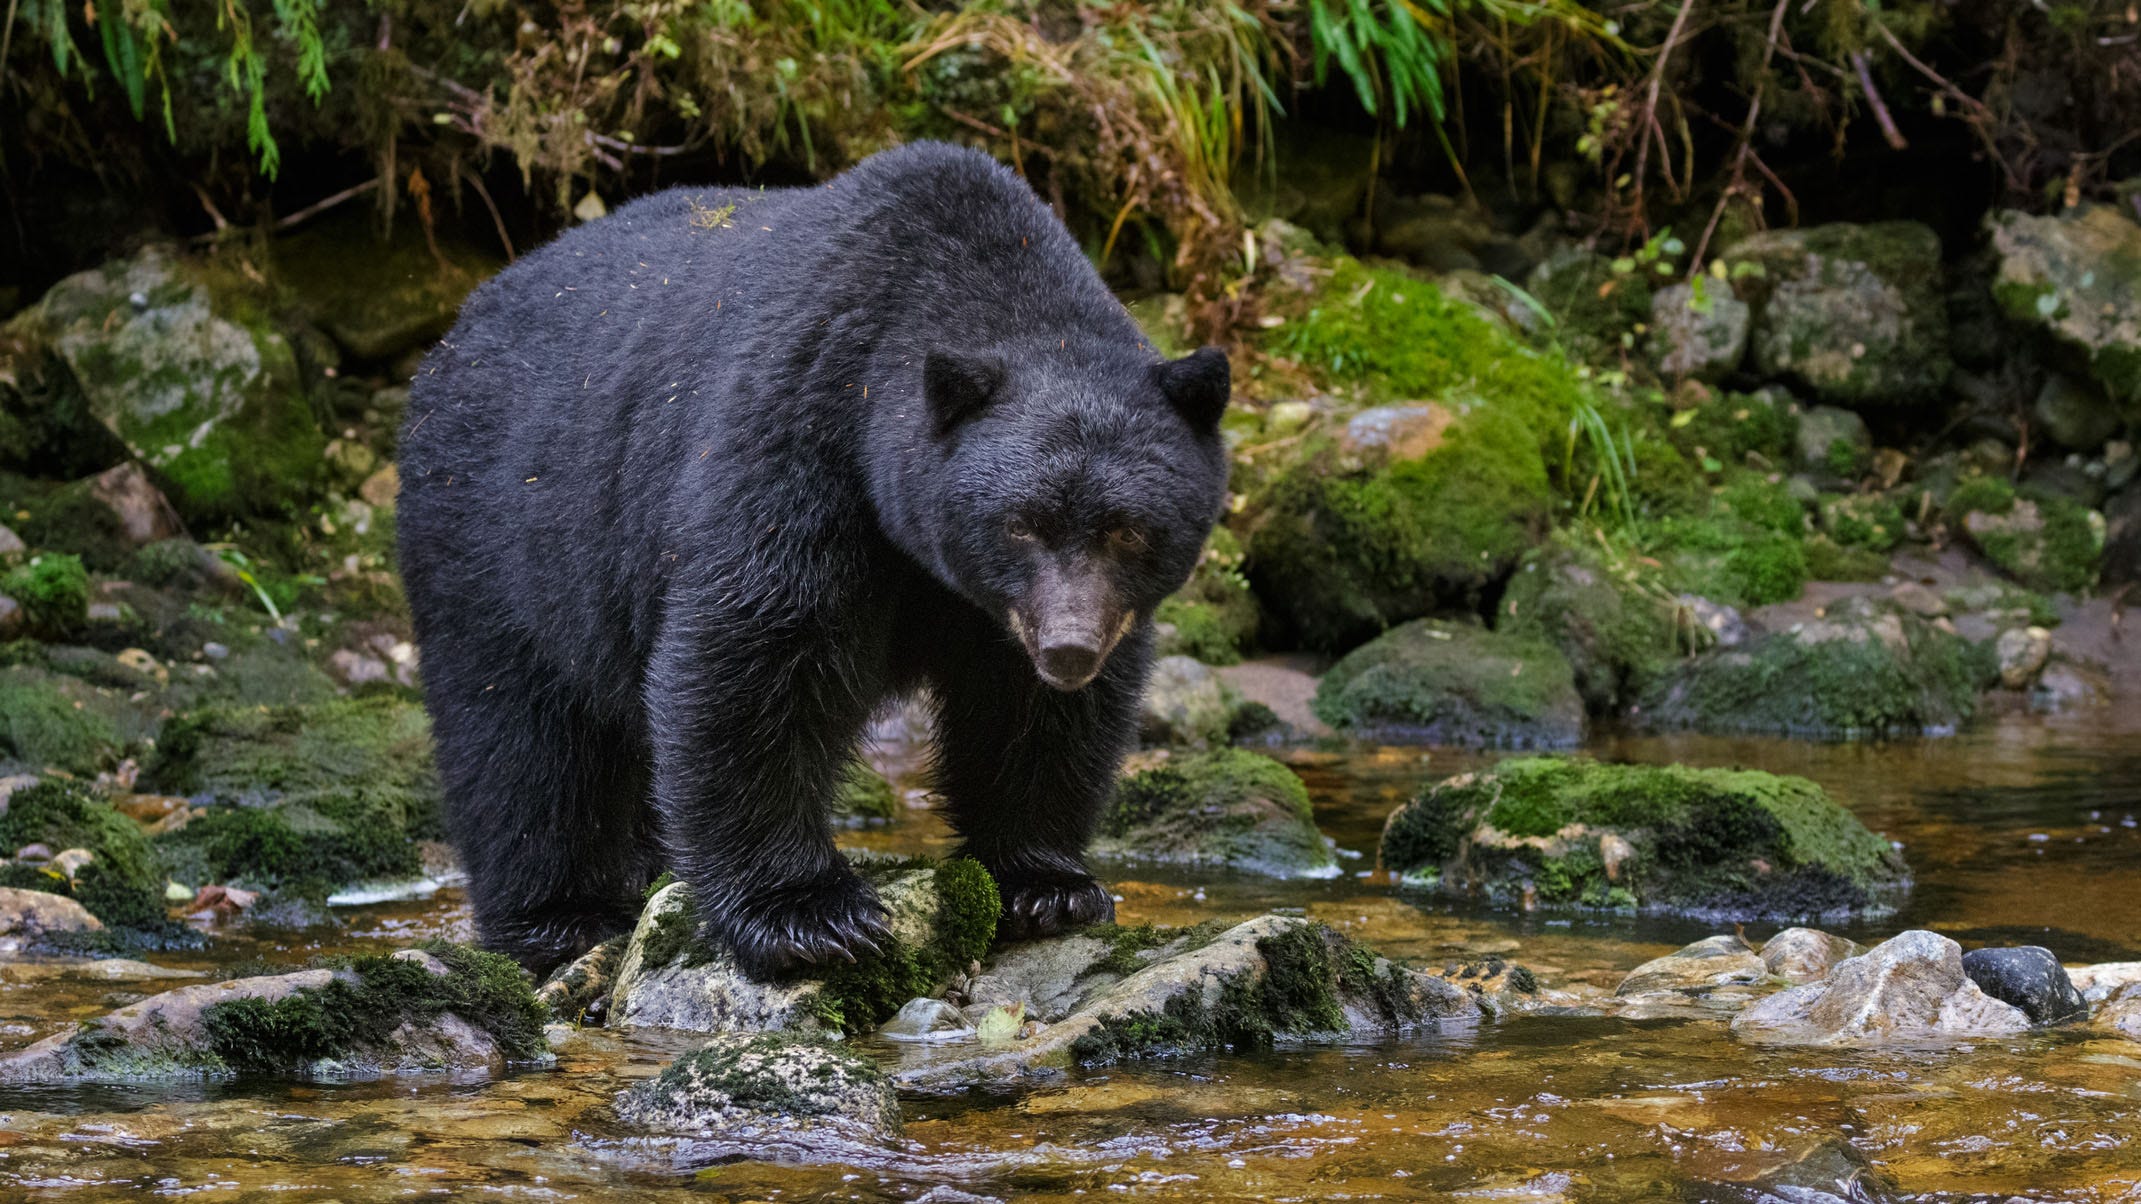 North Carolina approves limited bear hunting, overturning previous ban